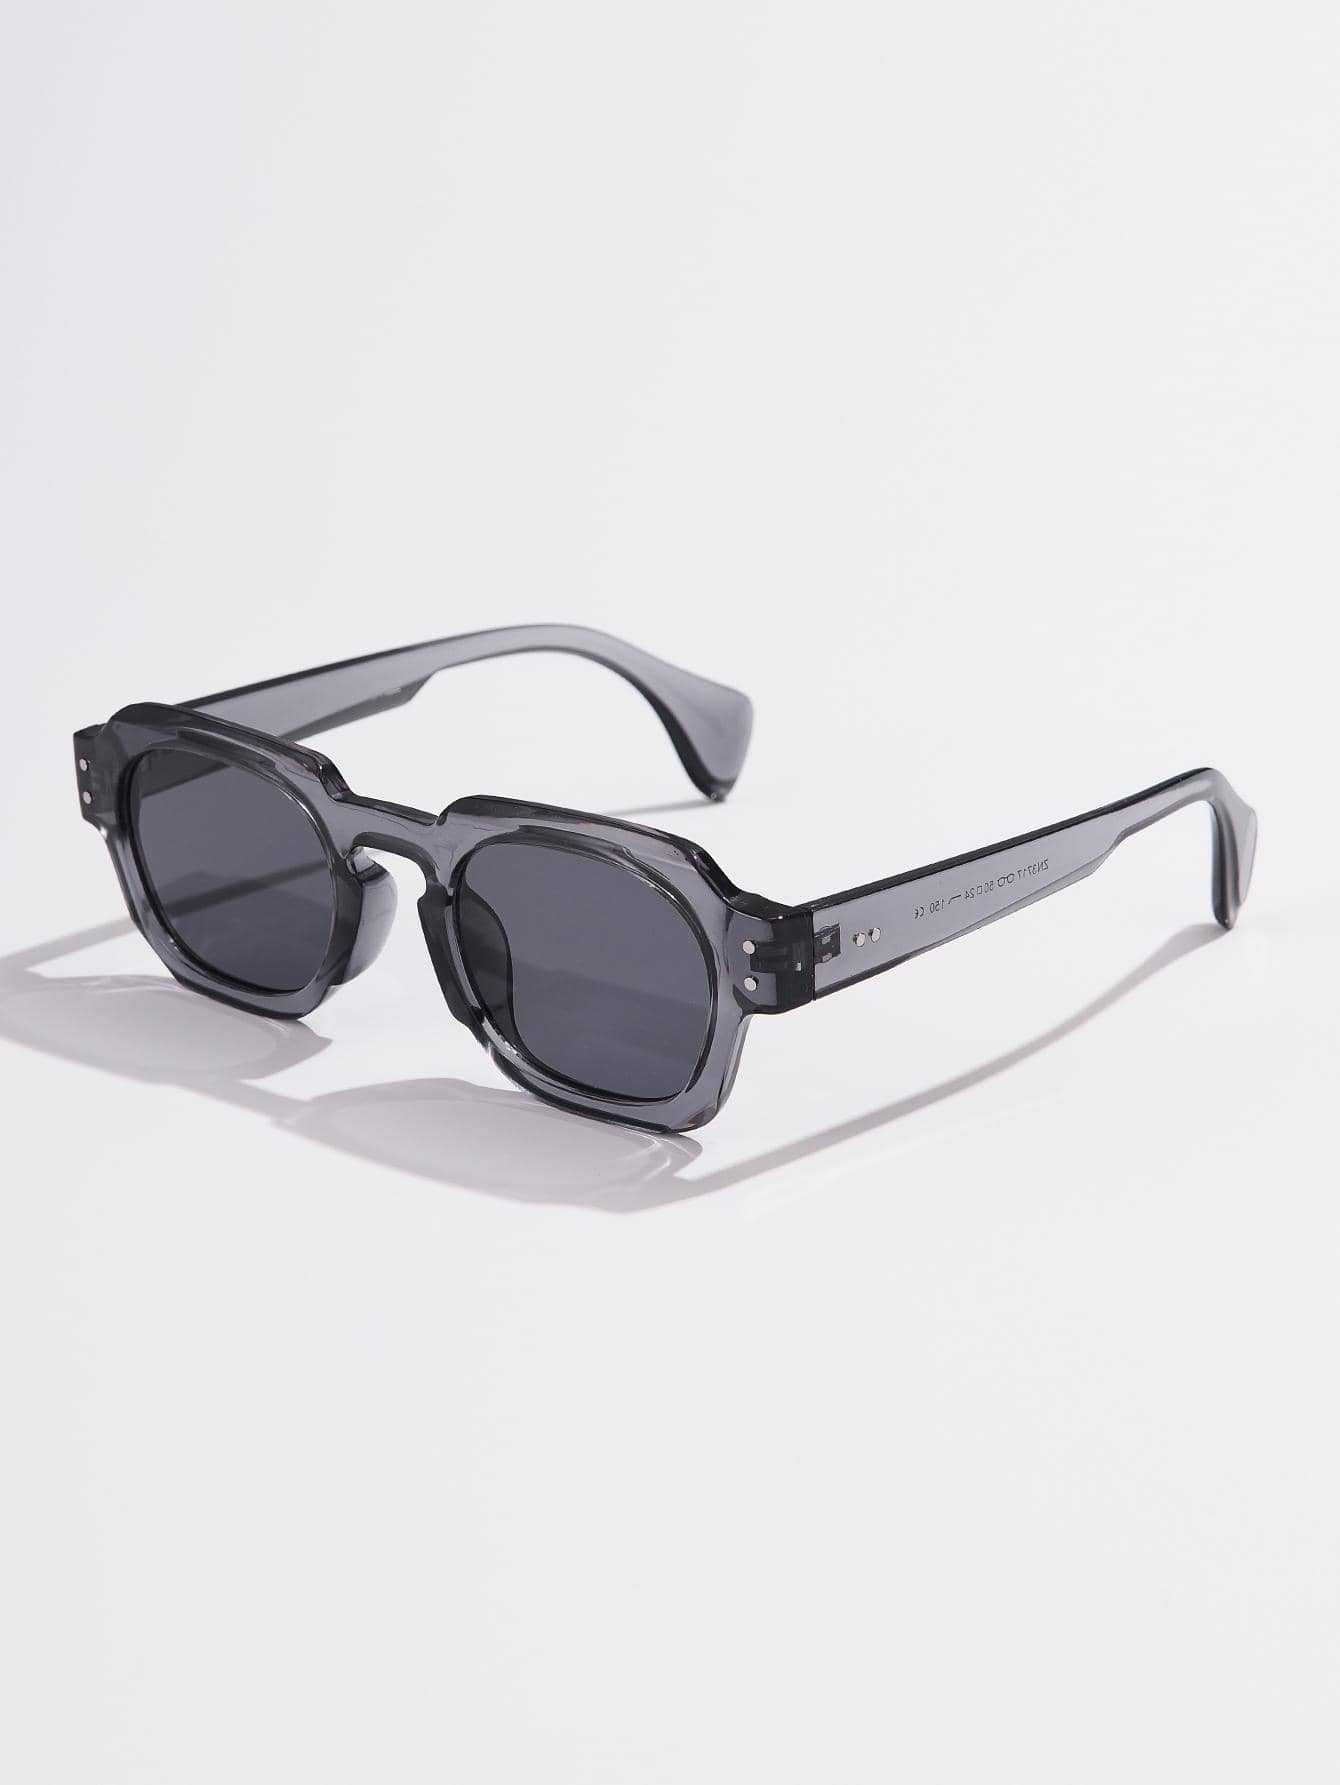 1шт женские модные солнцезащитные очки квадратной формы для вечеринок с футляром для очков, серый